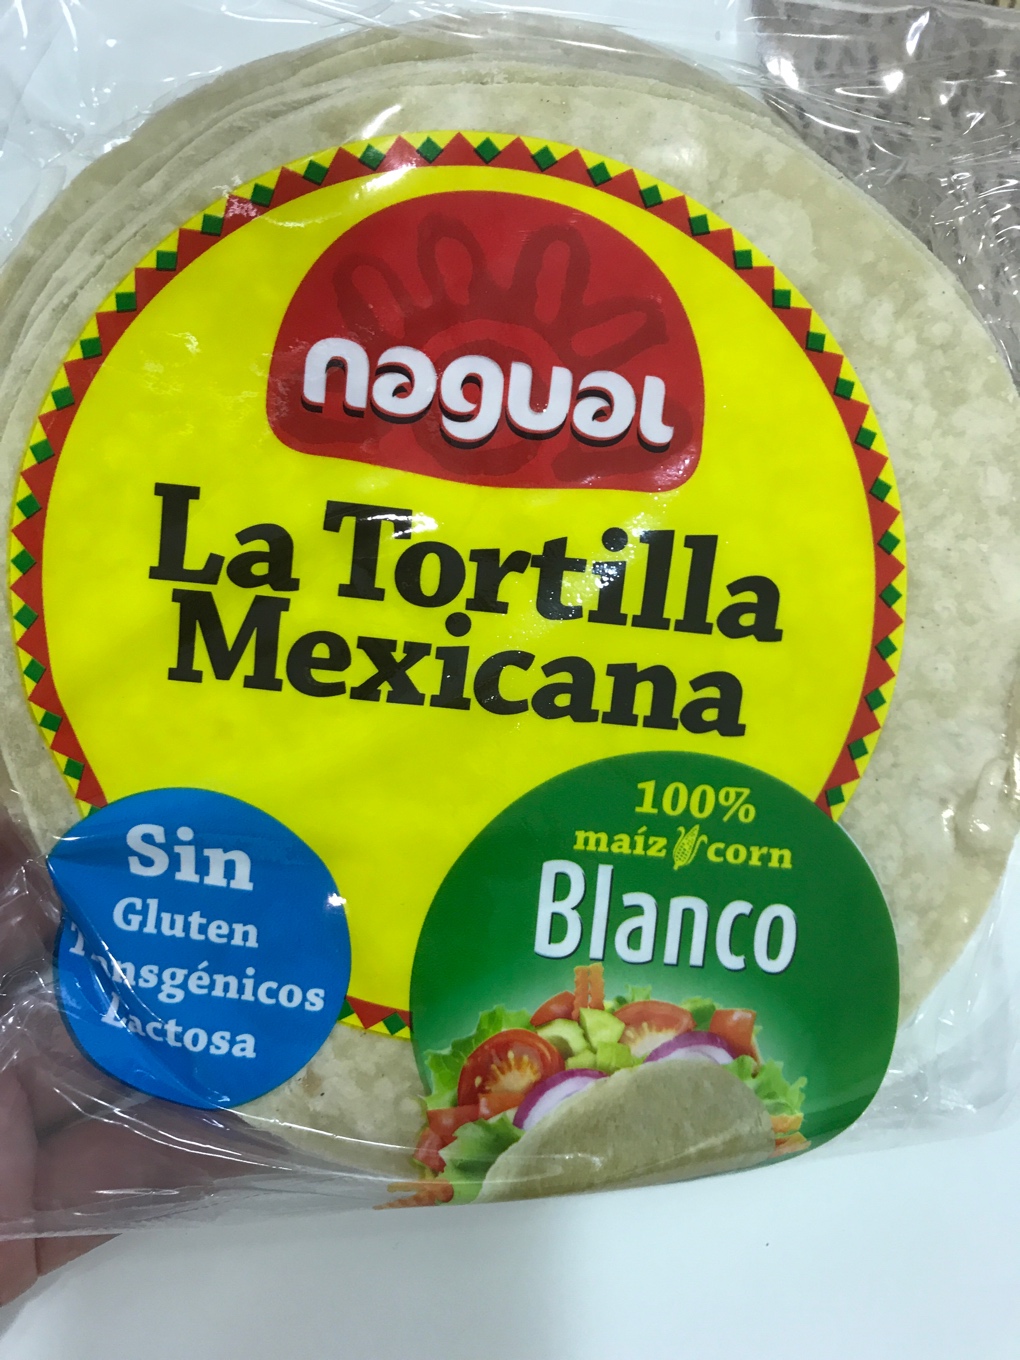 La tortilla mexicana